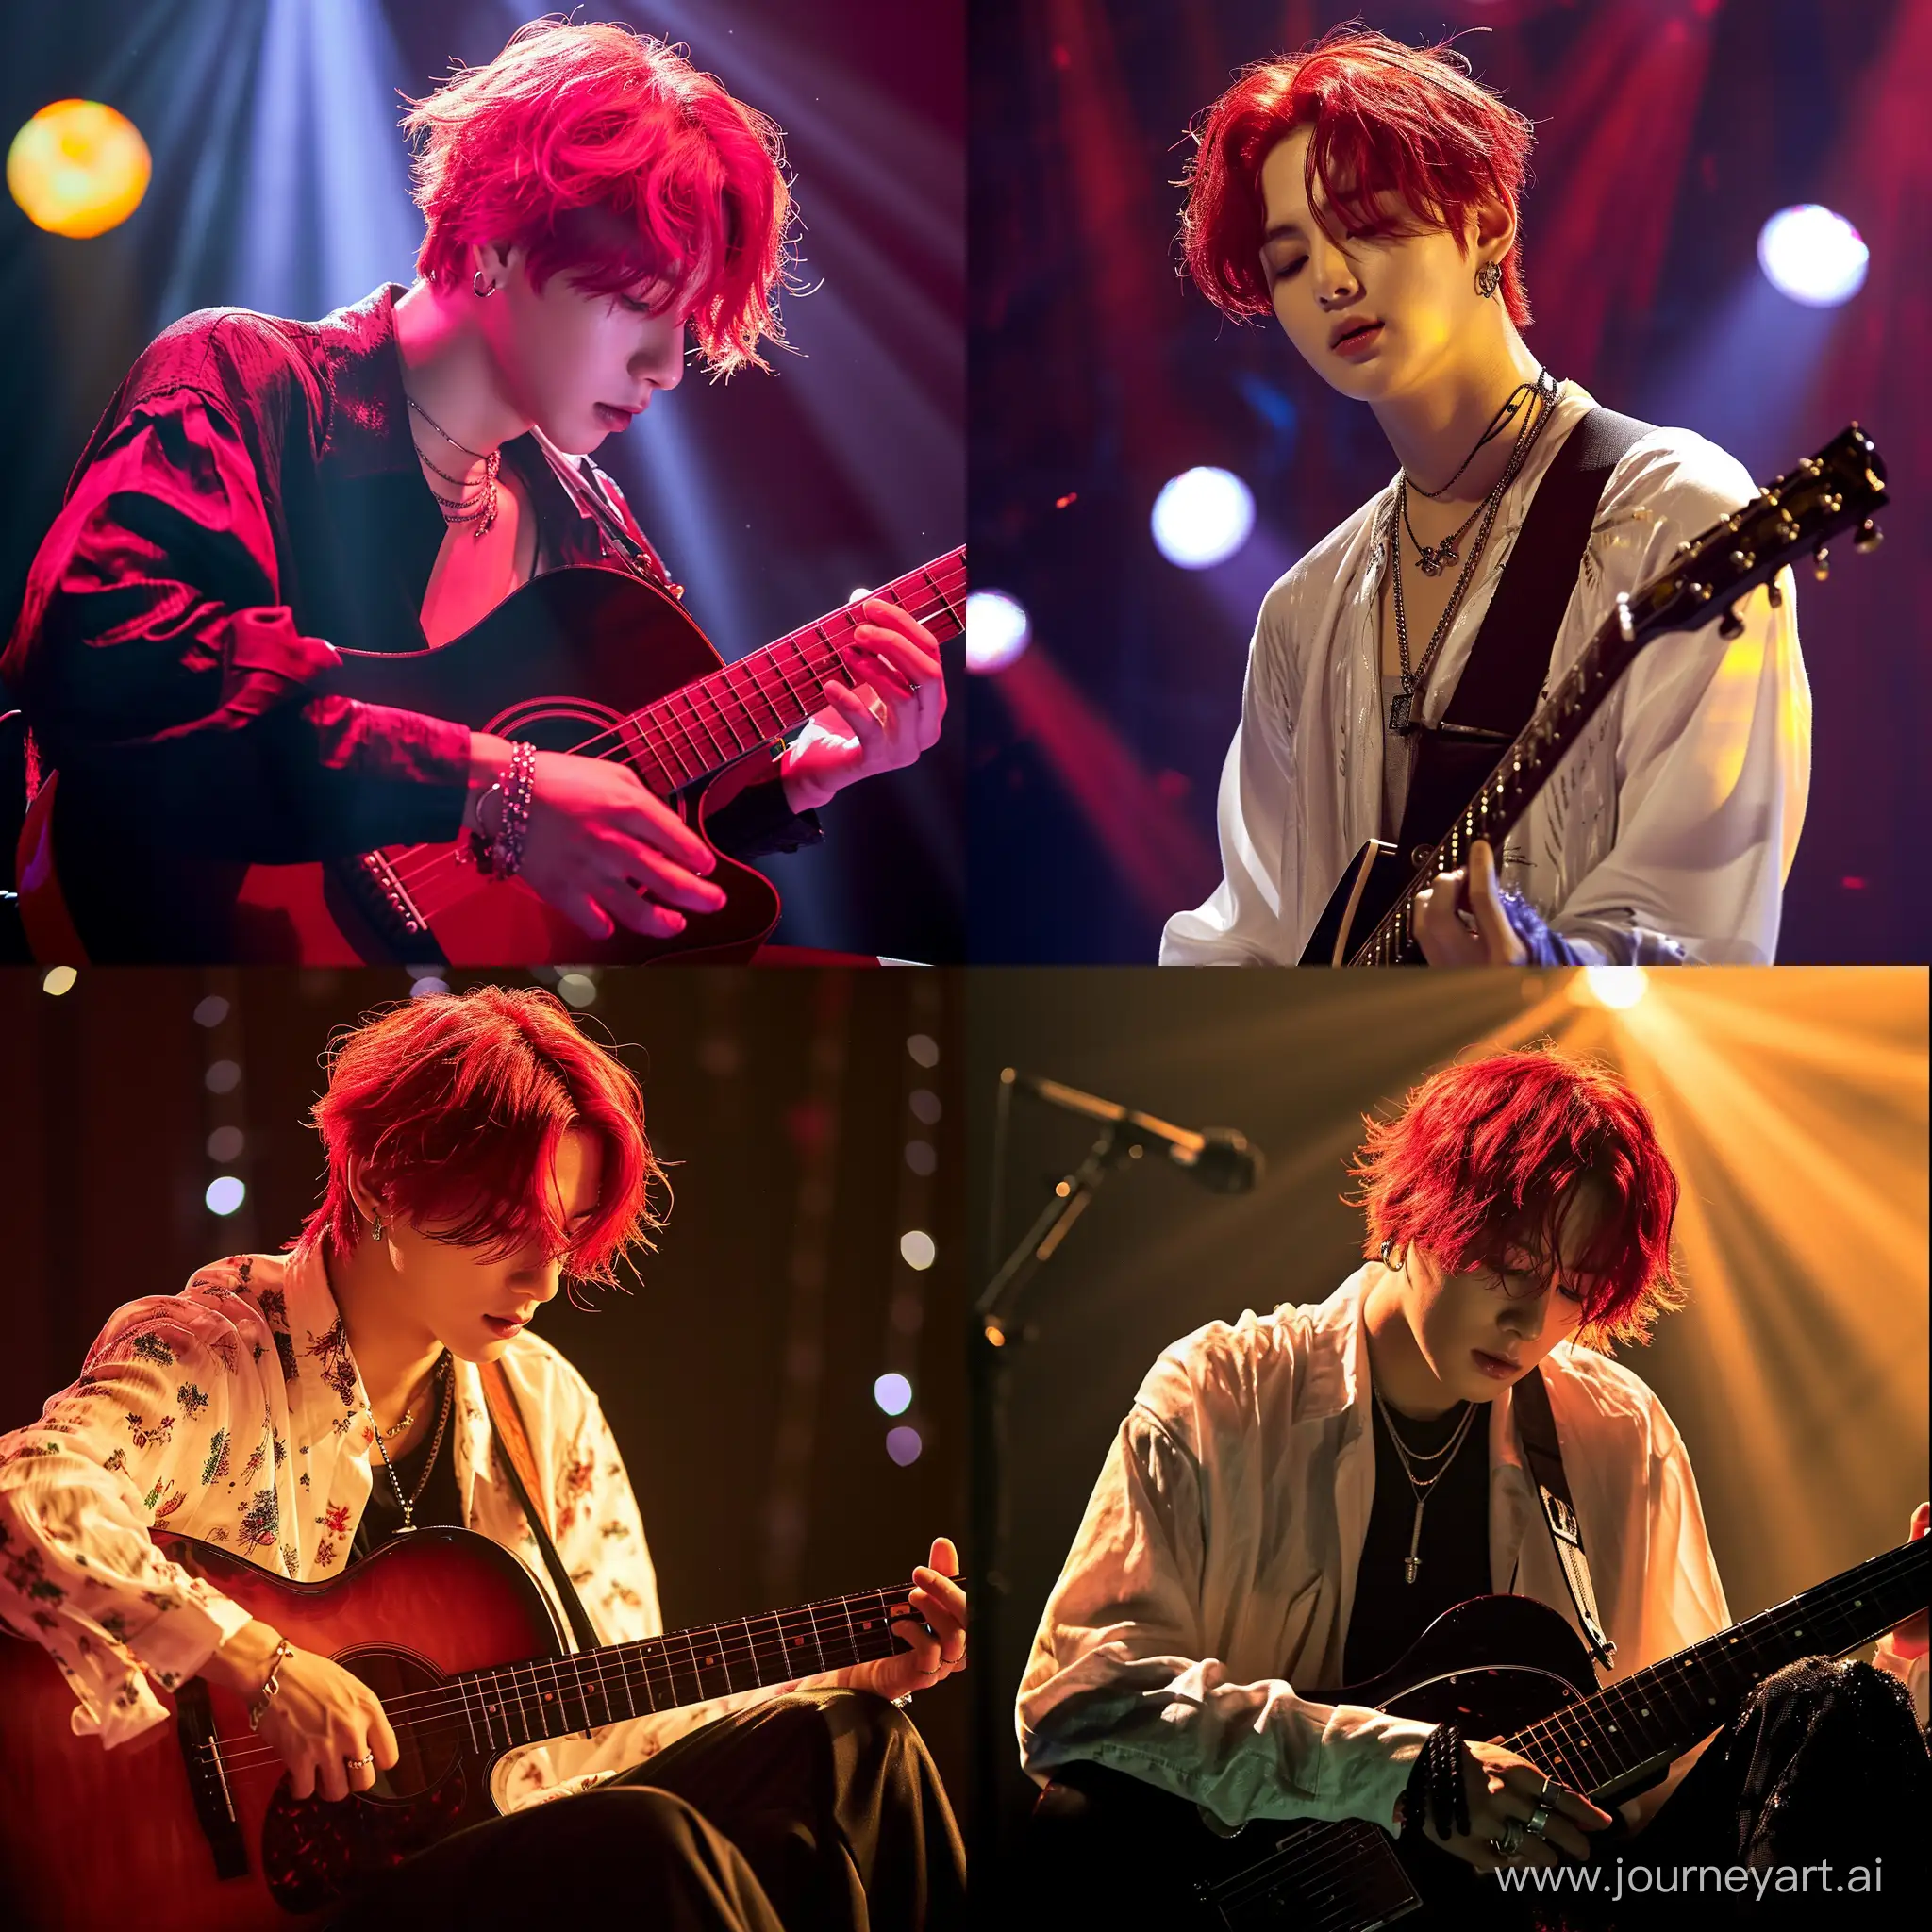 Чонгук с красными волосами играет на гитаре под красивым освещением